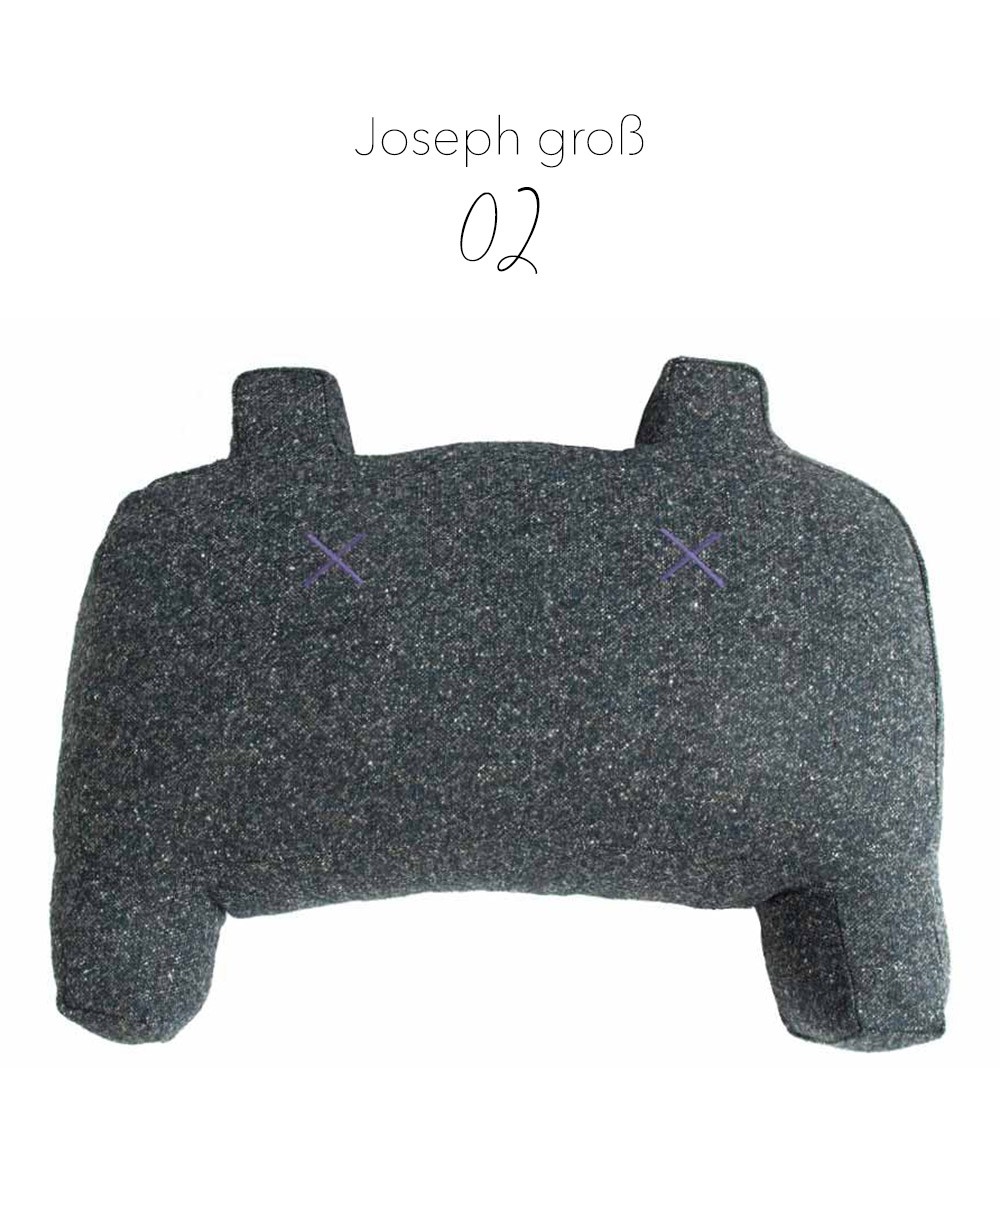 Produktbild des "Monster Joseph groß" in grau des Herstellers LPJ im RAUM Conceptstore